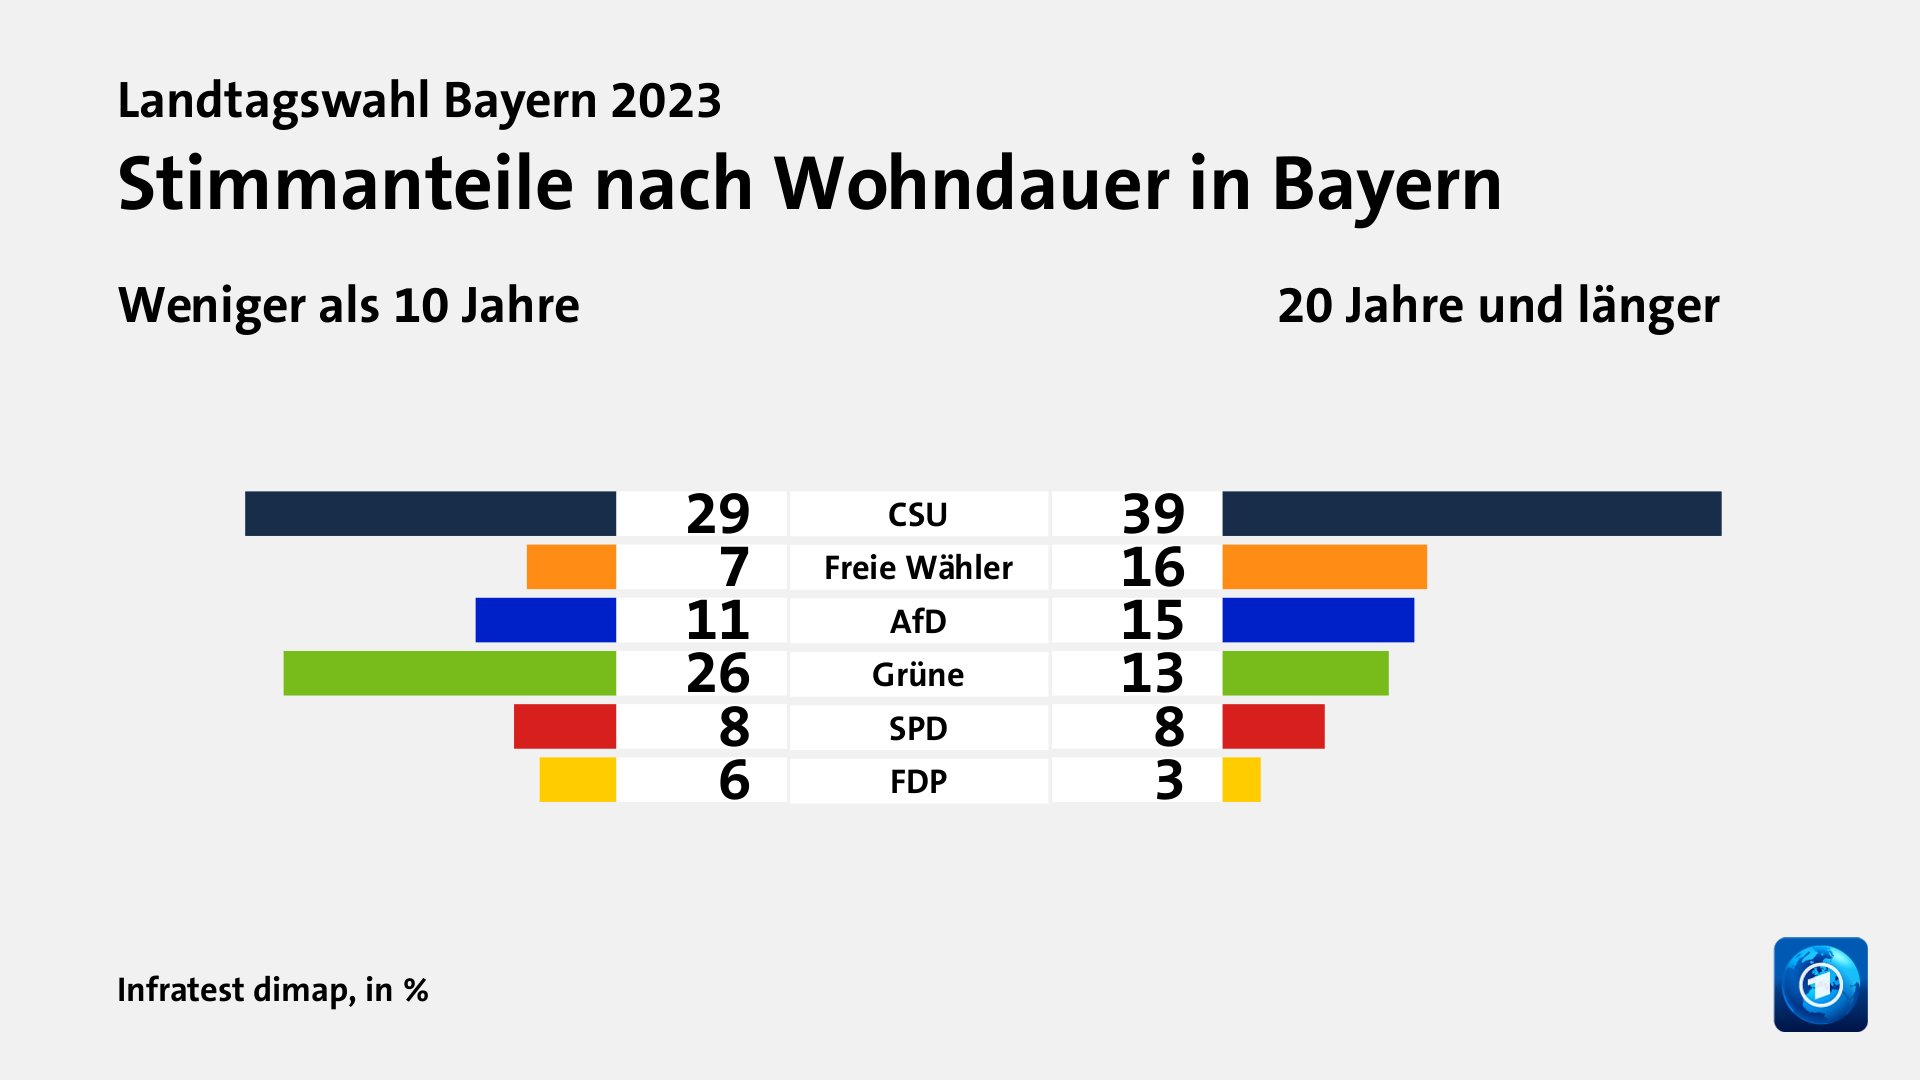 Stimmanteile nach Wohndauer in Bayern (in %) CSU: Weniger als 10 Jahre 29, 20 Jahre und länger 39; Freie Wähler: Weniger als 10 Jahre 7, 20 Jahre und länger 16; AfD: Weniger als 10 Jahre 11, 20 Jahre und länger 15; Grüne: Weniger als 10 Jahre 26, 20 Jahre und länger 13; SPD: Weniger als 10 Jahre 8, 20 Jahre und länger 8; FDP: Weniger als 10 Jahre 6, 20 Jahre und länger 3; Quelle: Infratest dimap